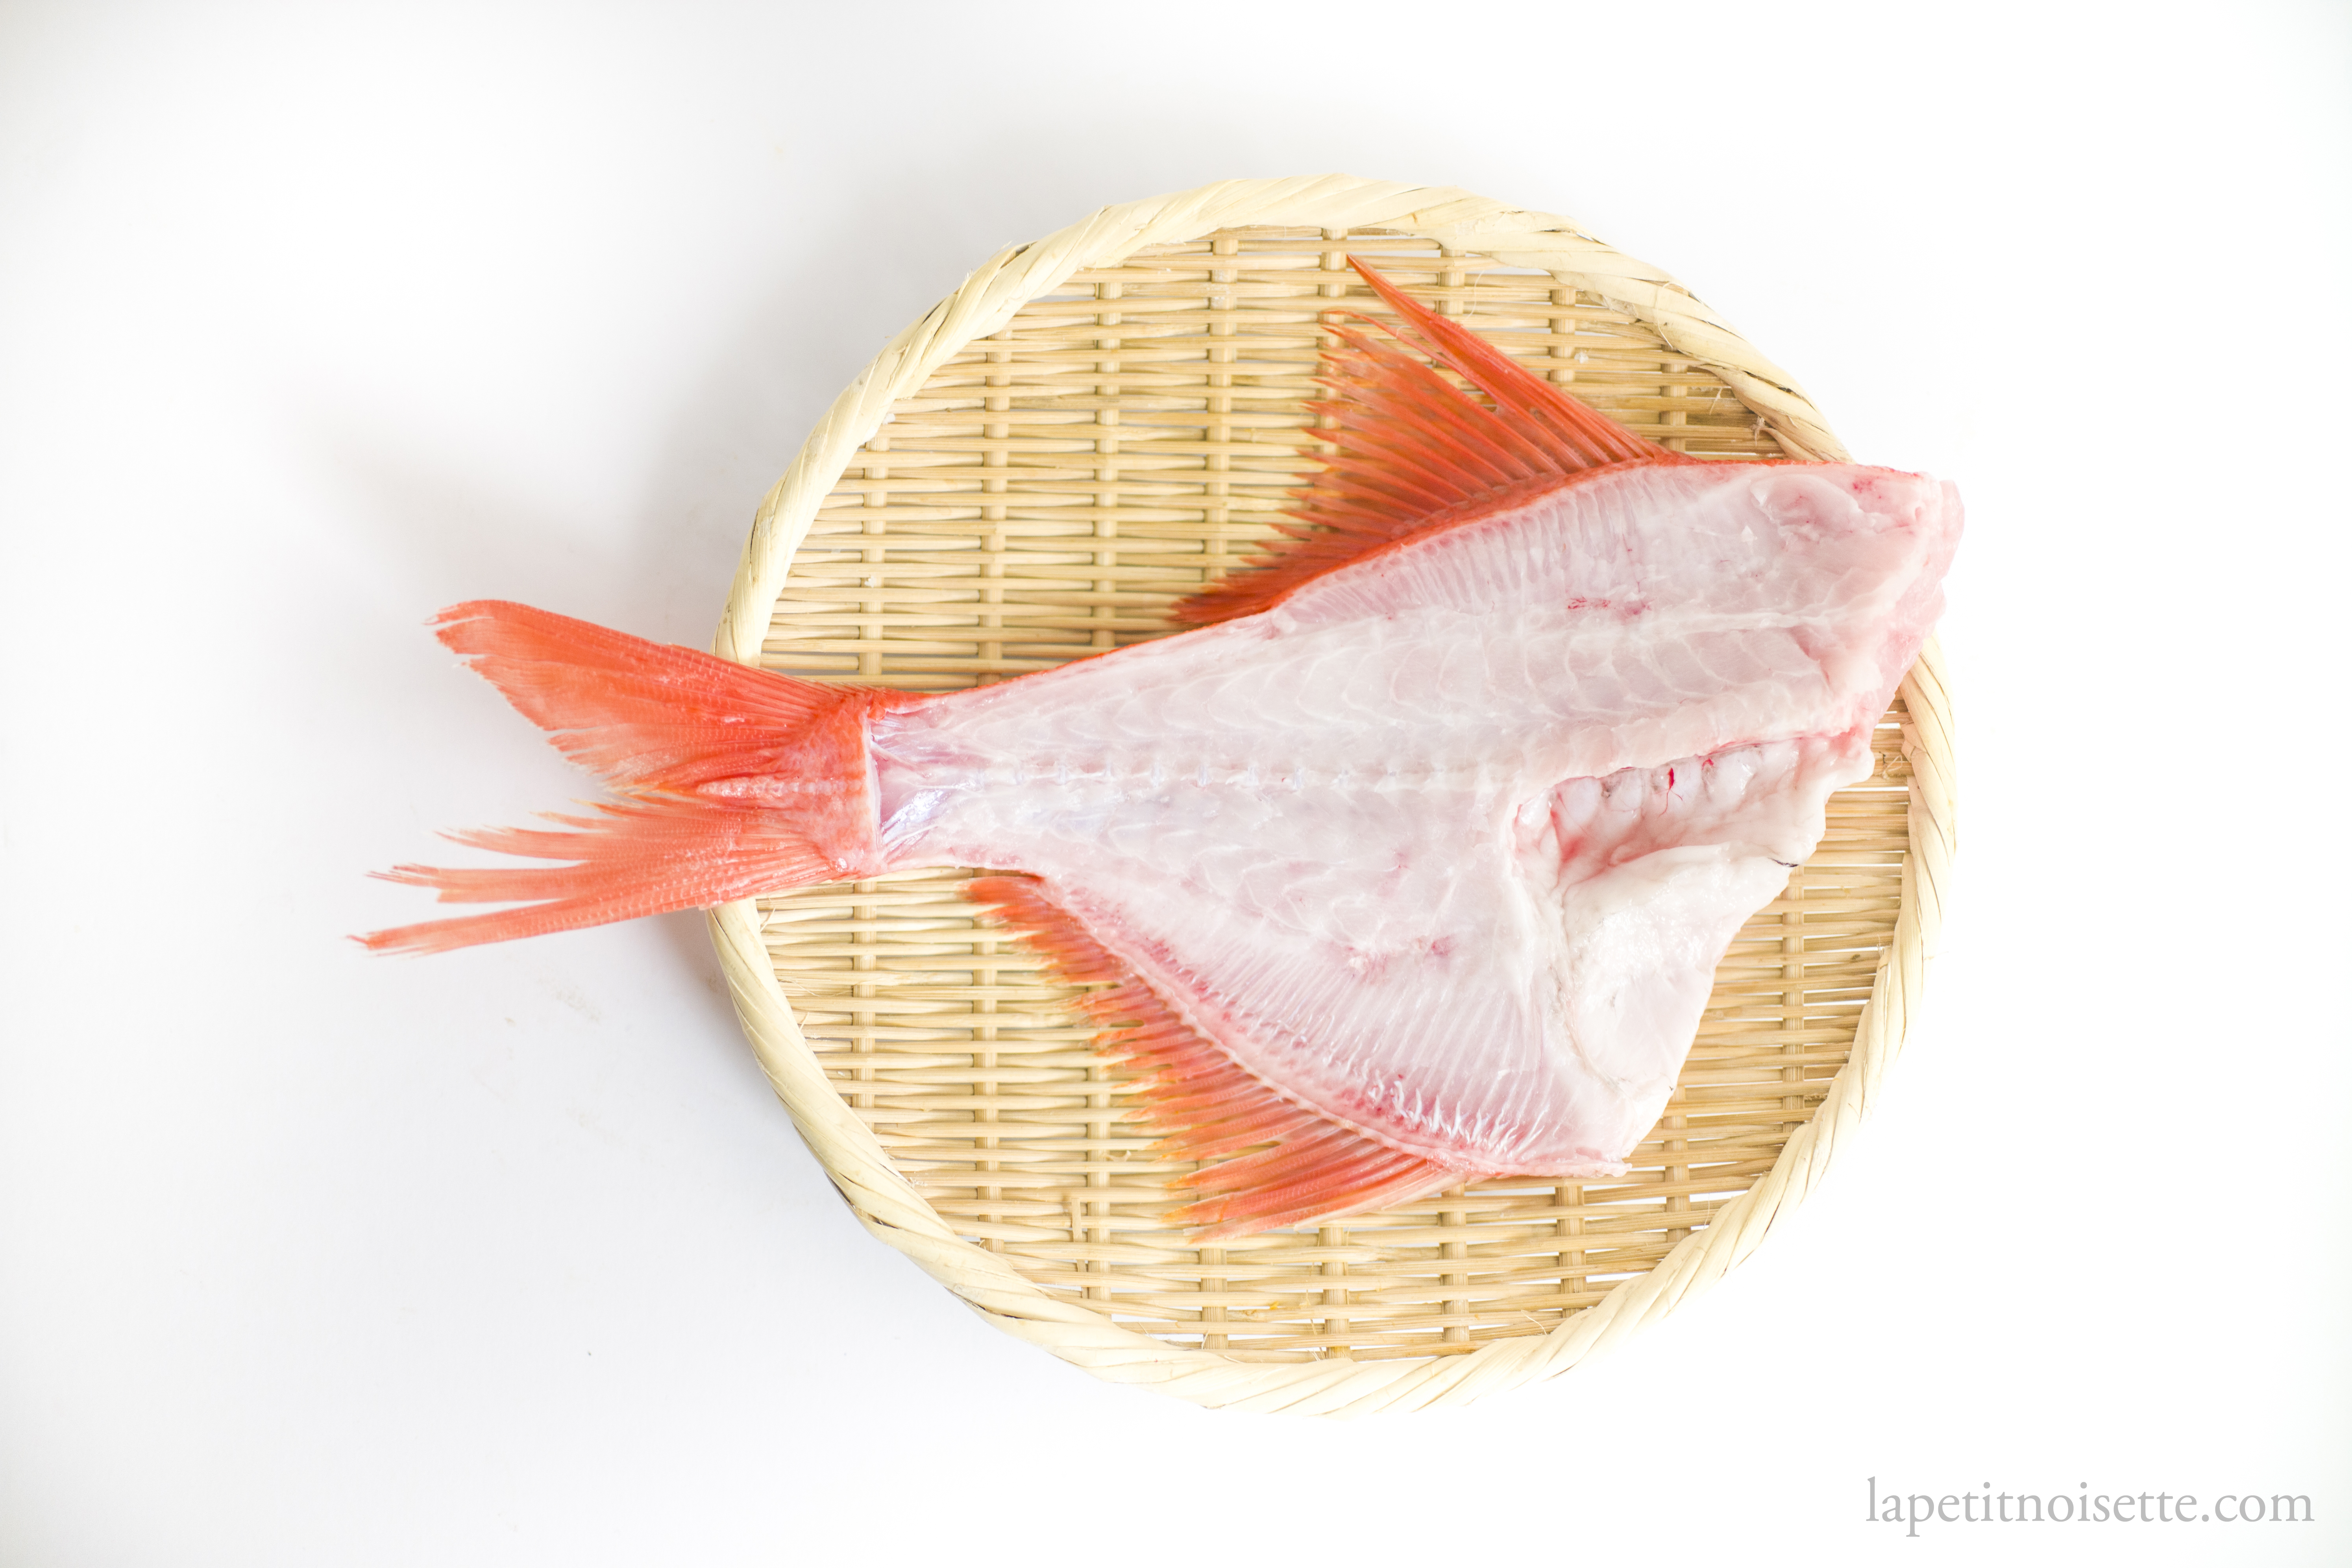 A clean and filleted nanyo-kinmedai fish.